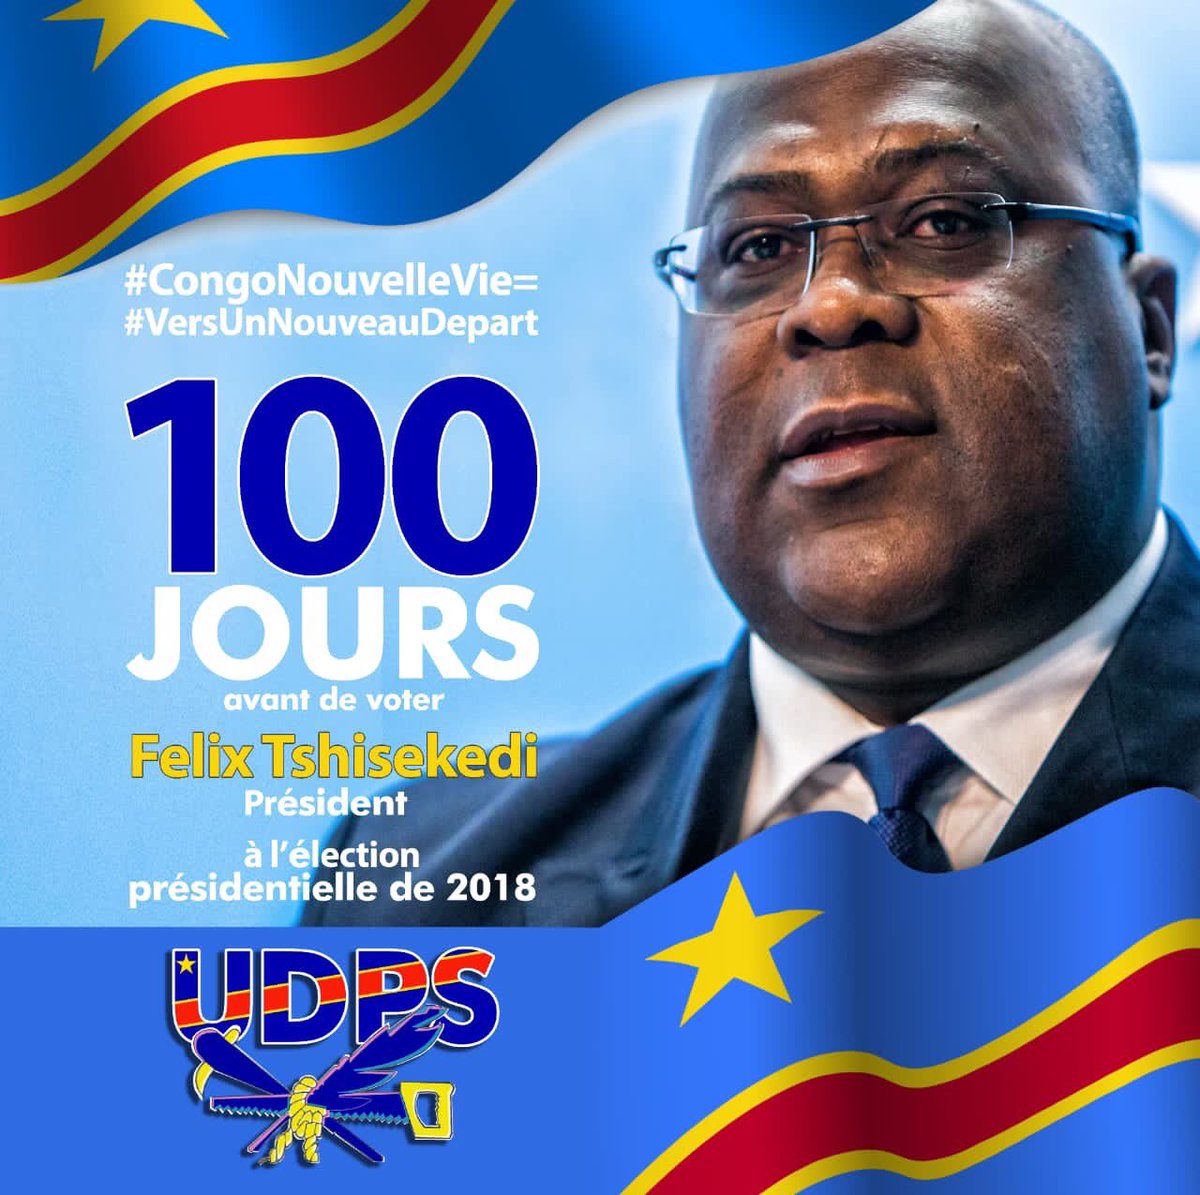 #CongoNouvelleVie
#NouveauDepart
#FelixTshisekedi #udps
#100jours
#rdc #drc #congo